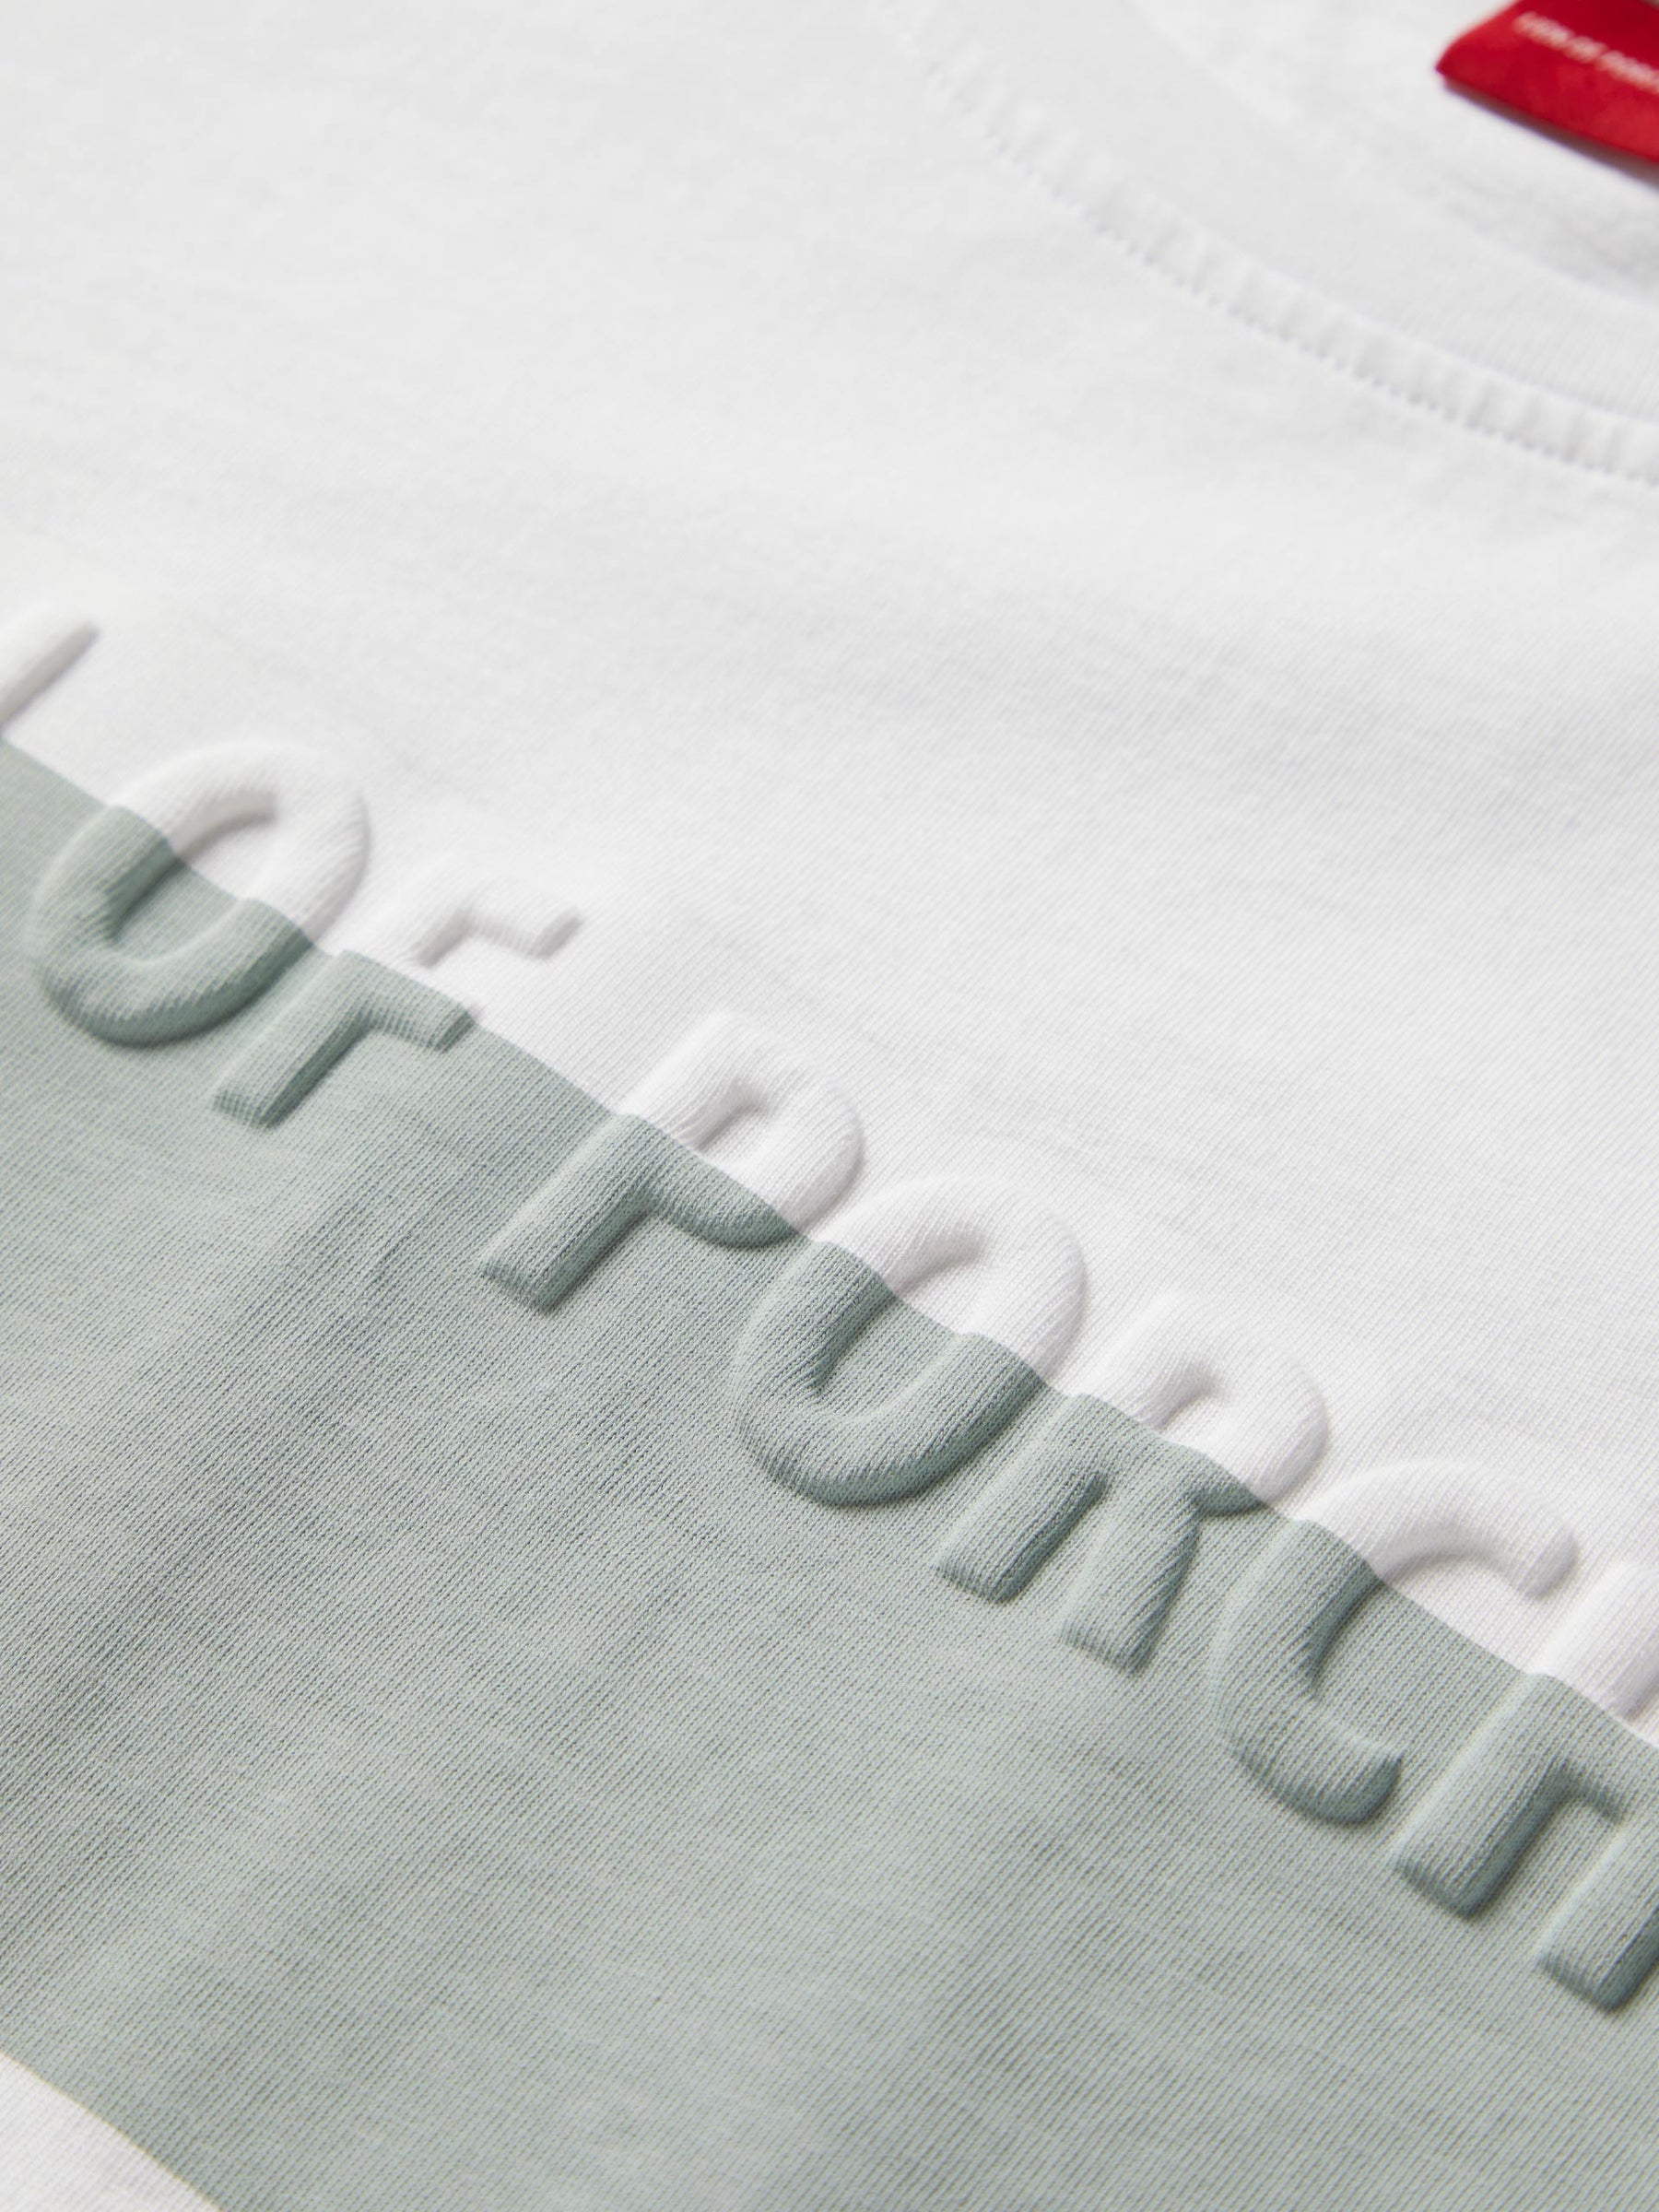 T-shirt 100% algodão com barra em contraste